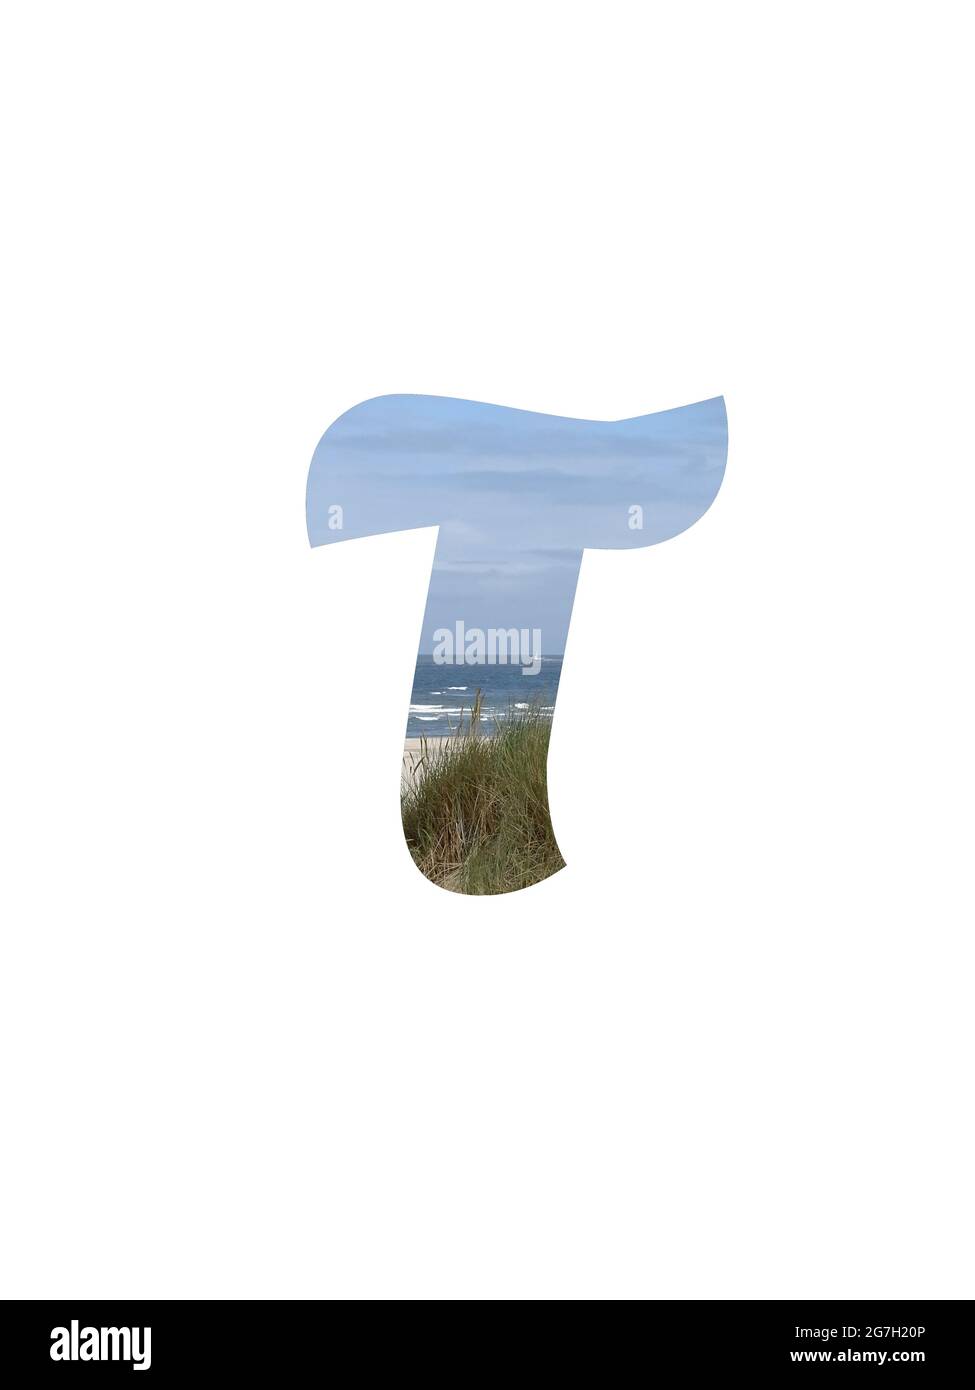 Lettera T dell'alfabeto fatto con un paesaggio con spiaggia, mare, cielo blu e dune, isolato su uno sfondo bianco Foto Stock